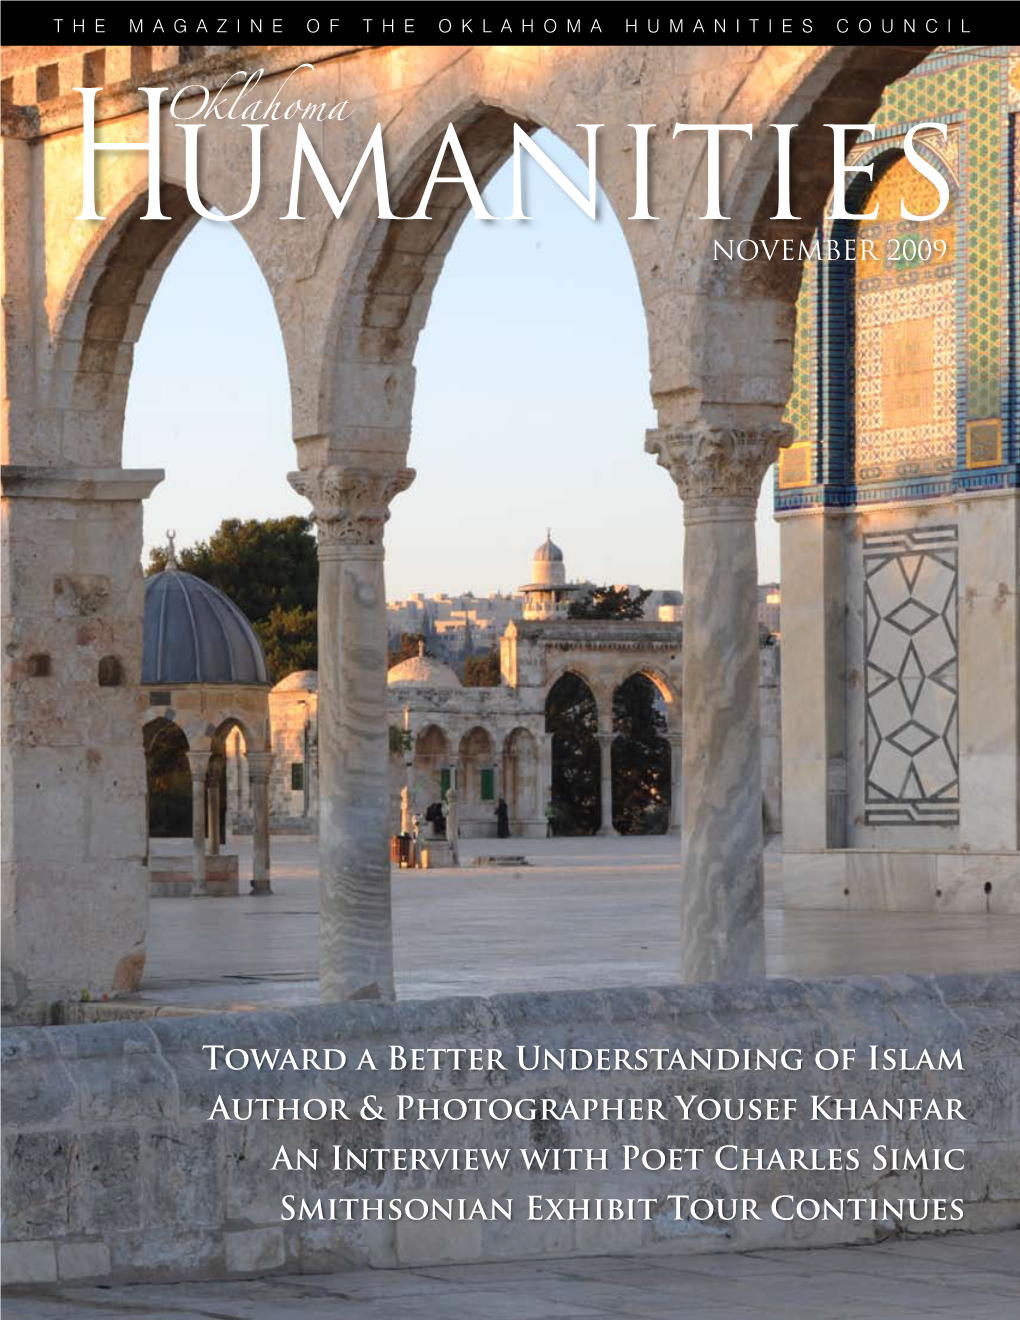 Toward a Better Understanding of Islam Author & Photographer